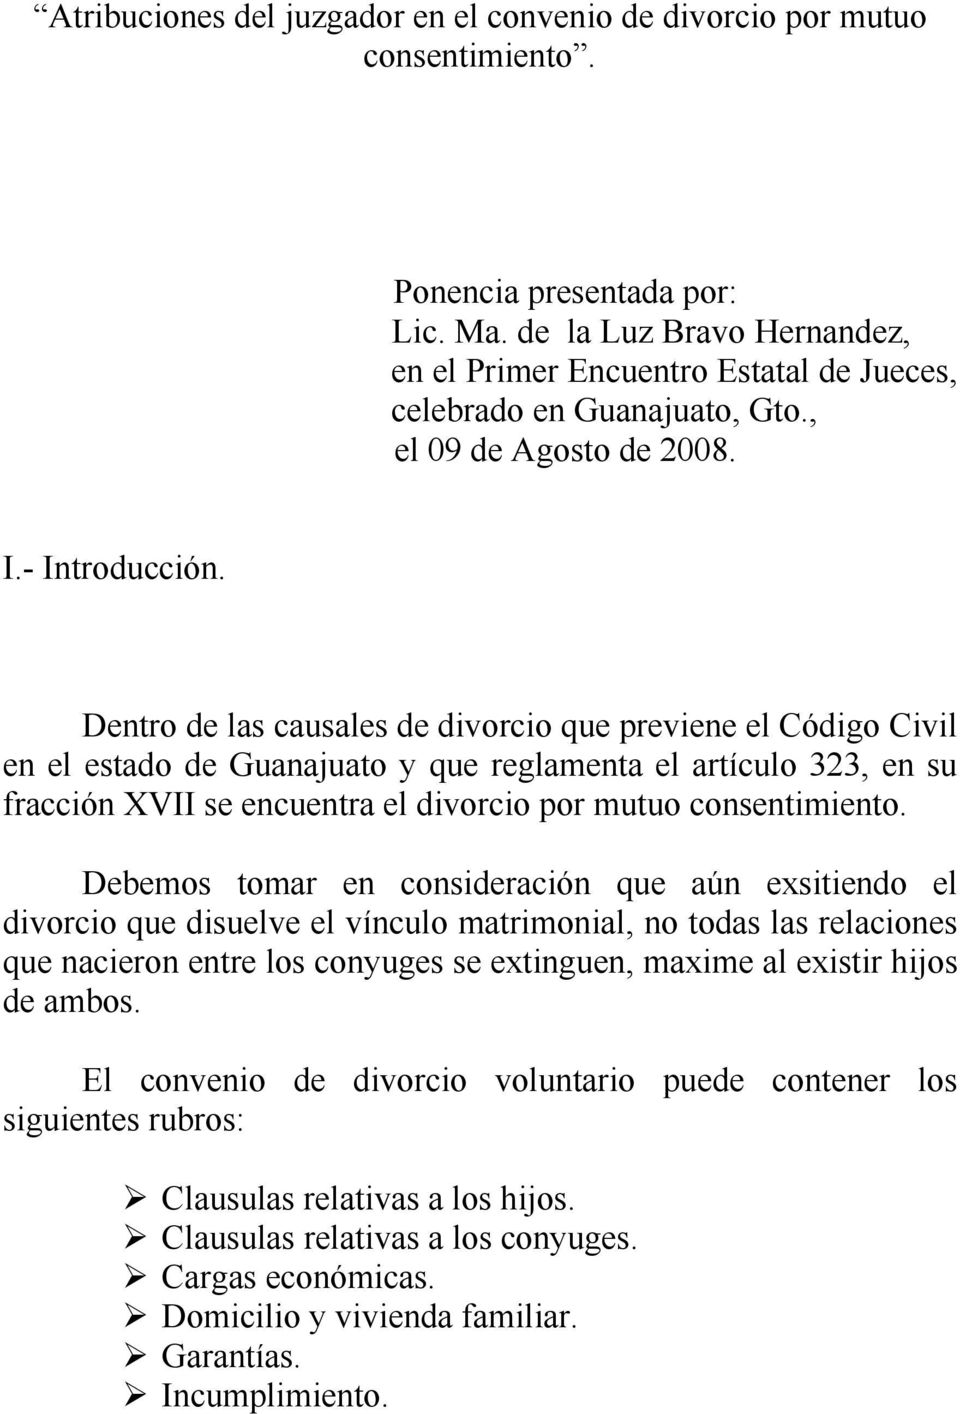 Dentro de las causales de divorcio que previene el Código Civil en el estado de Guanajuato y que reglamenta el artículo 323, en su fracción XVII se encuentra el divorcio por mutuo consentimiento.